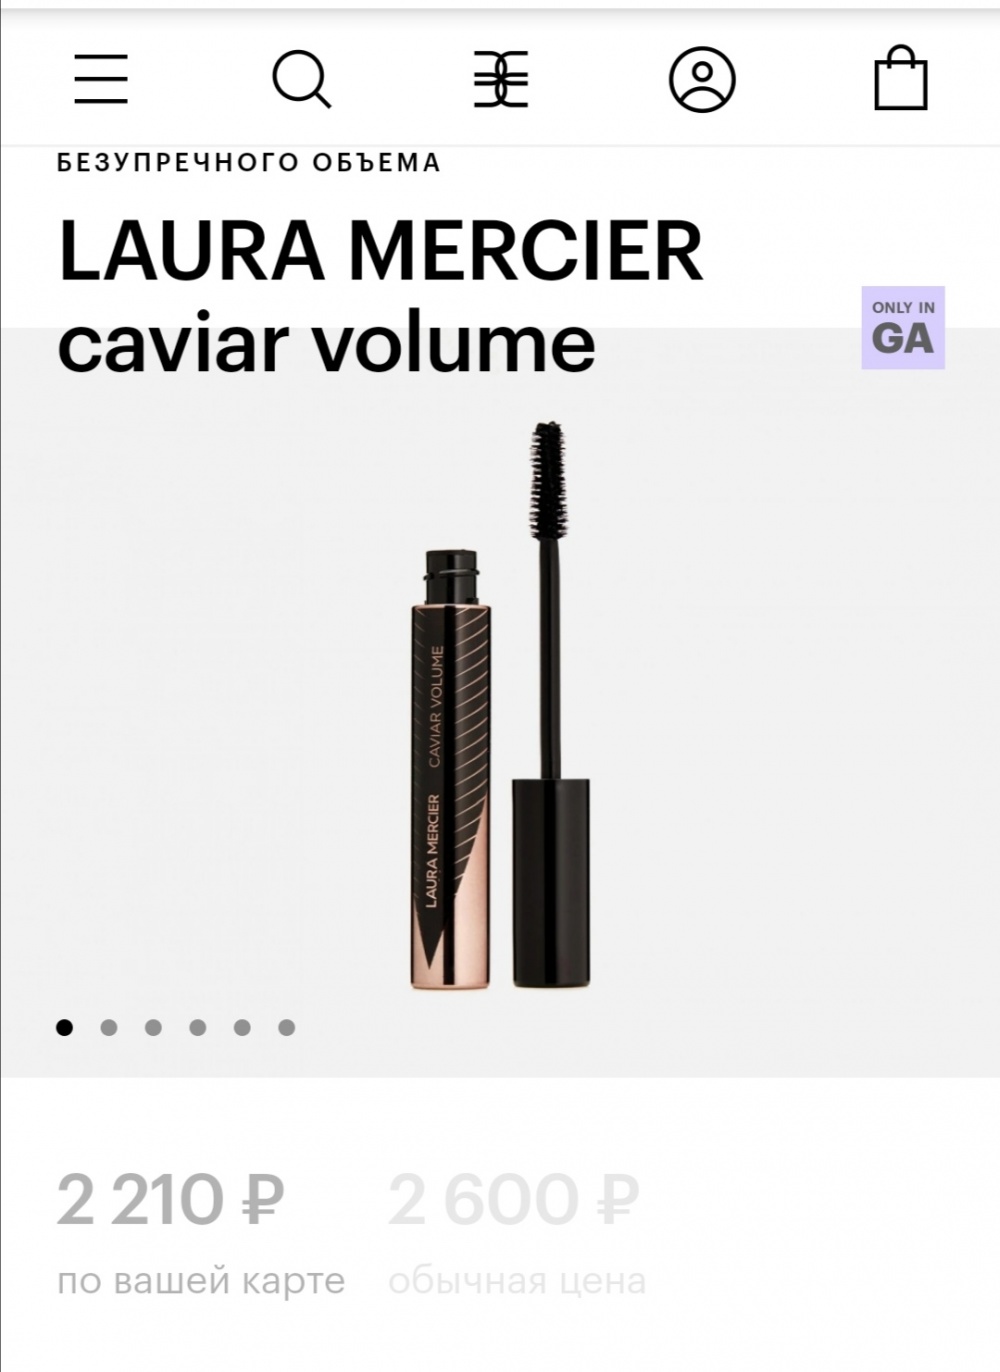 Тушь для ресниц Laura Mercier caviar volume объем 12 мл